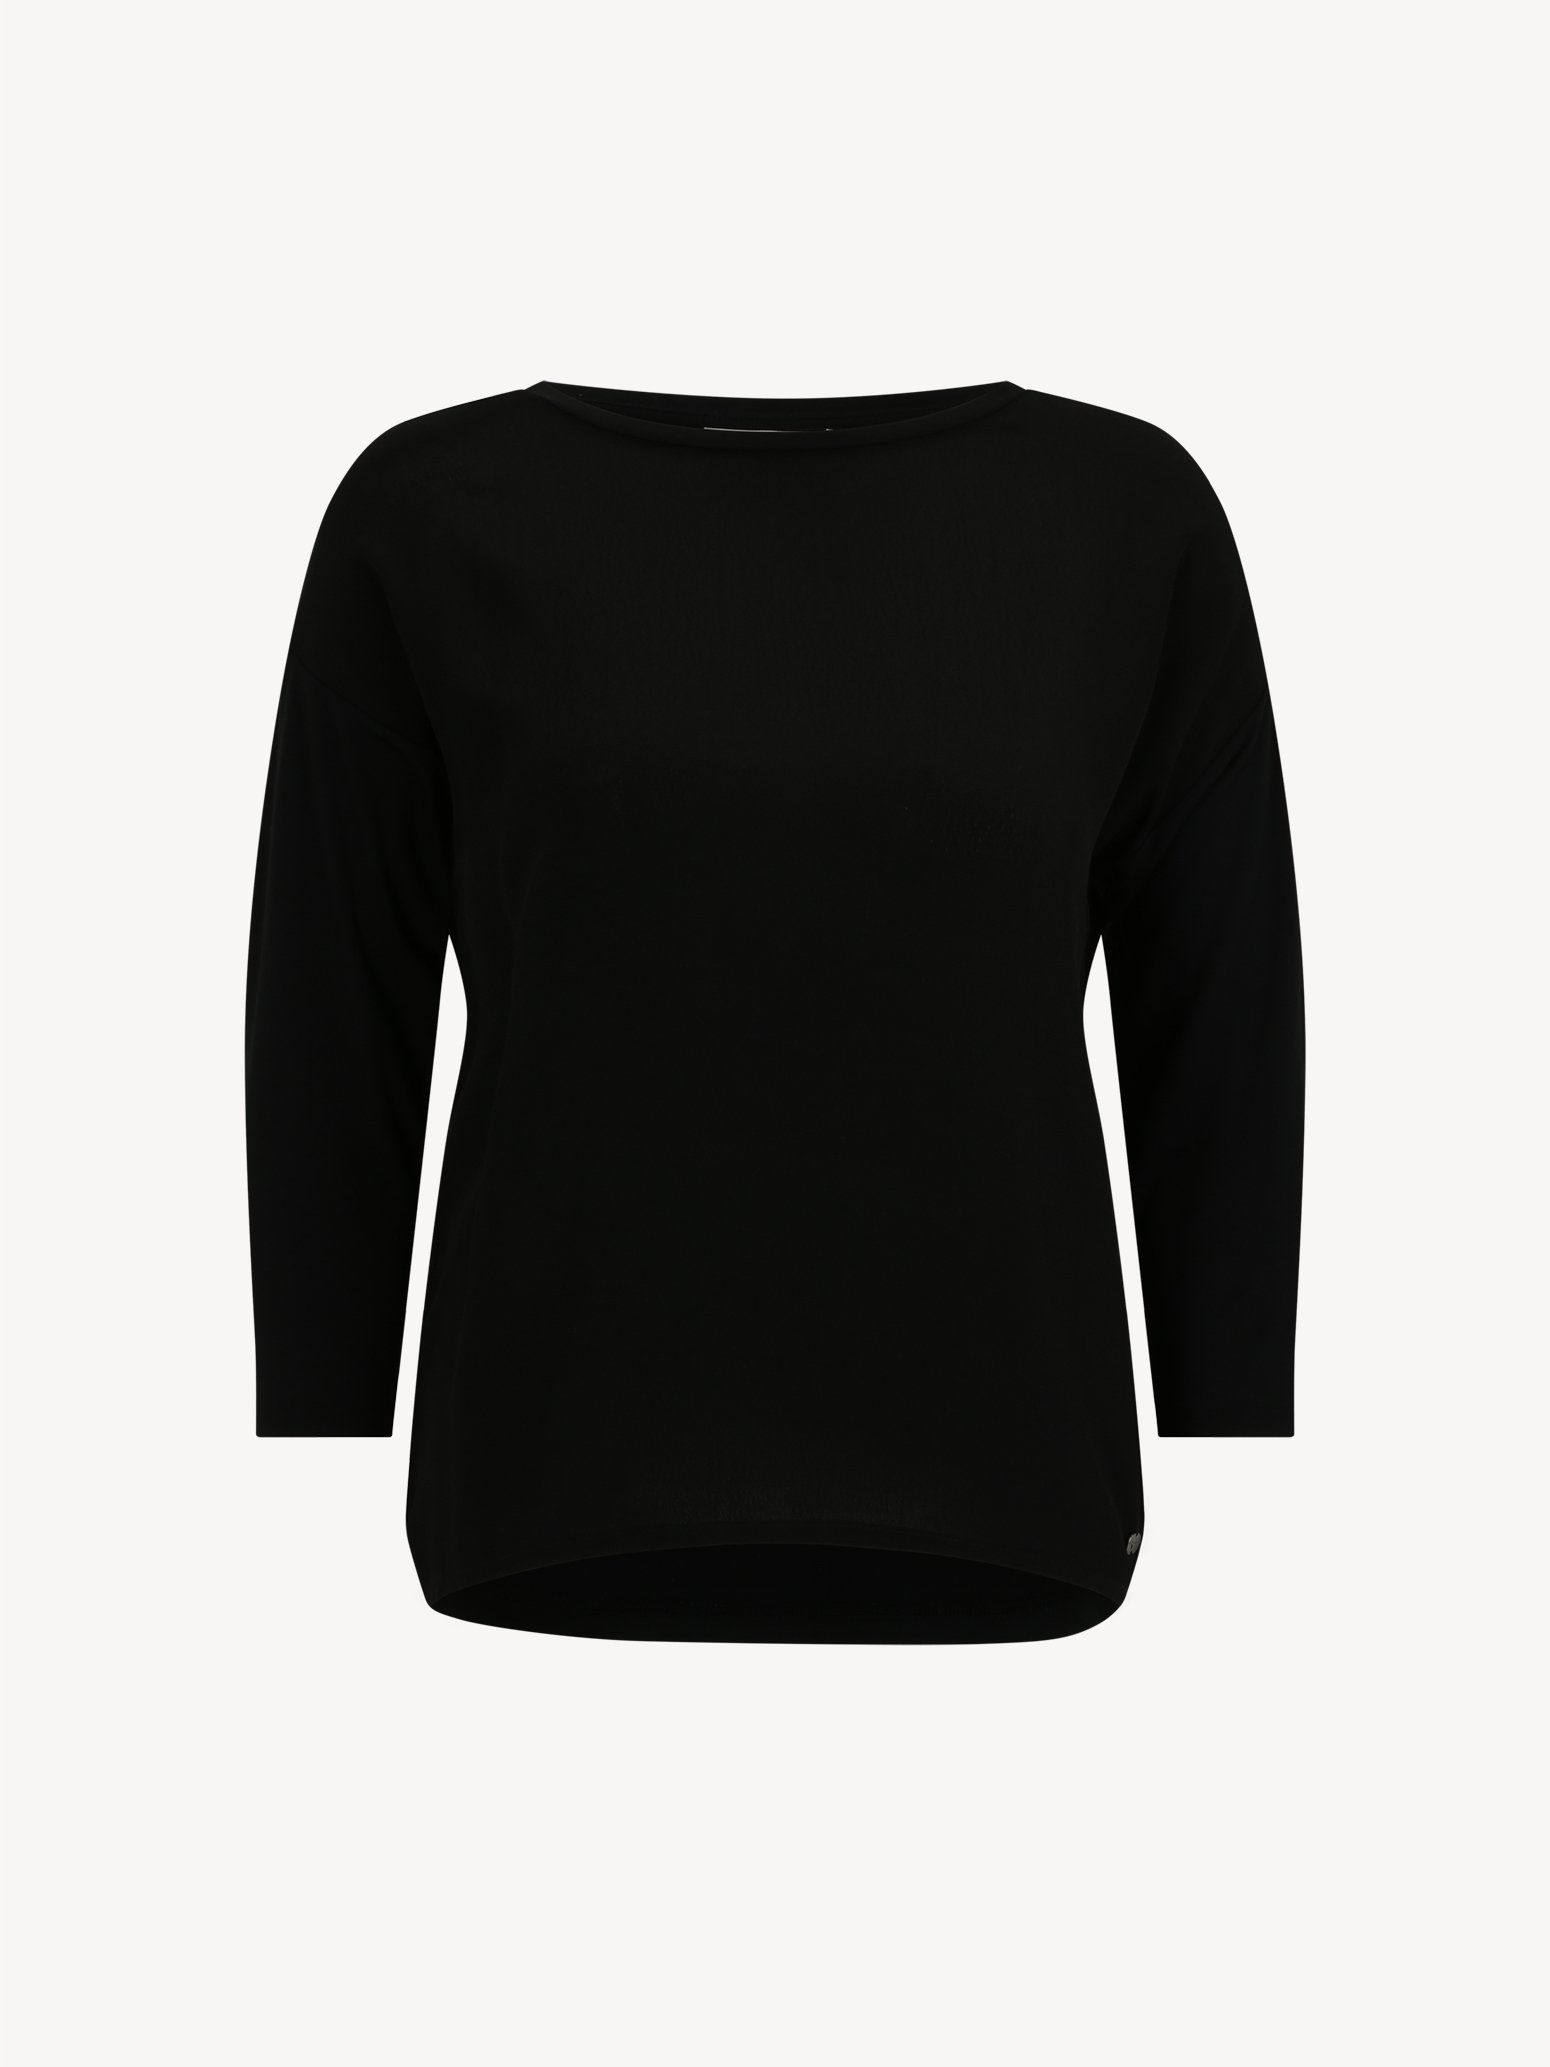 Langarmshirt/Longsleeve - schwarz TAW0372-80009: Tops Tamaris Shirts online kaufen! 